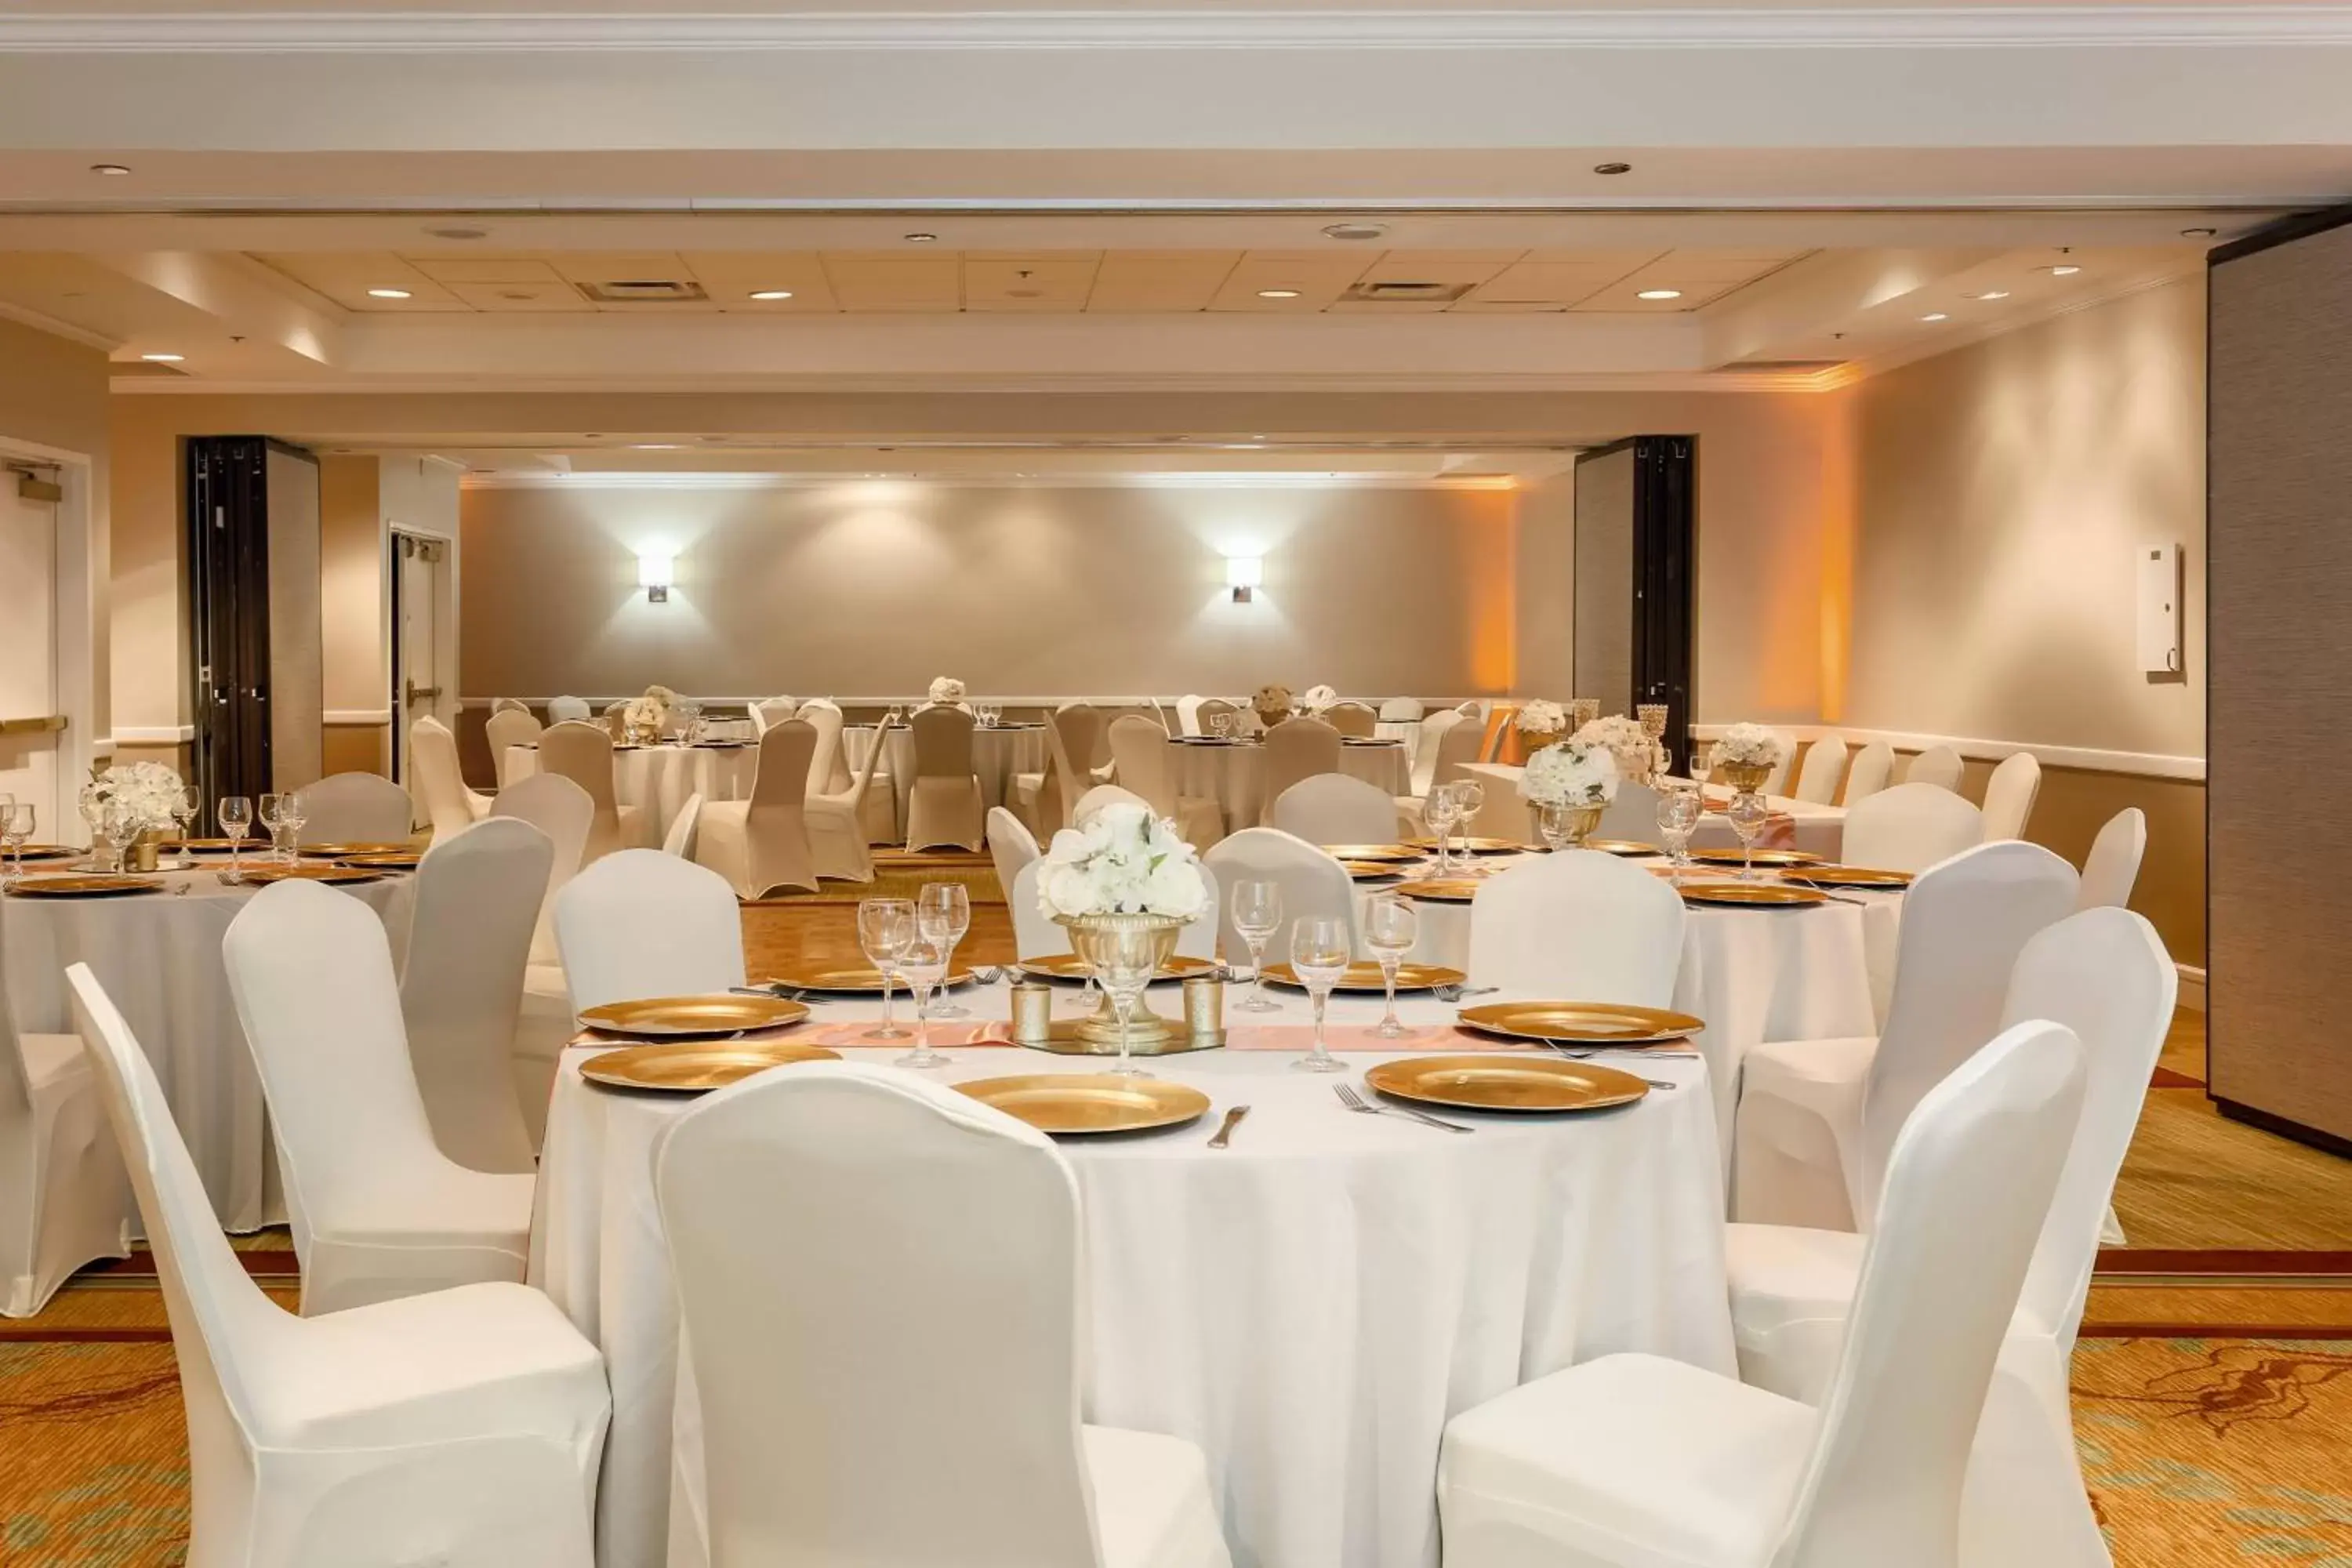 Banquet/Function facilities, Banquet Facilities in Sheraton Suites Market Center Dallas